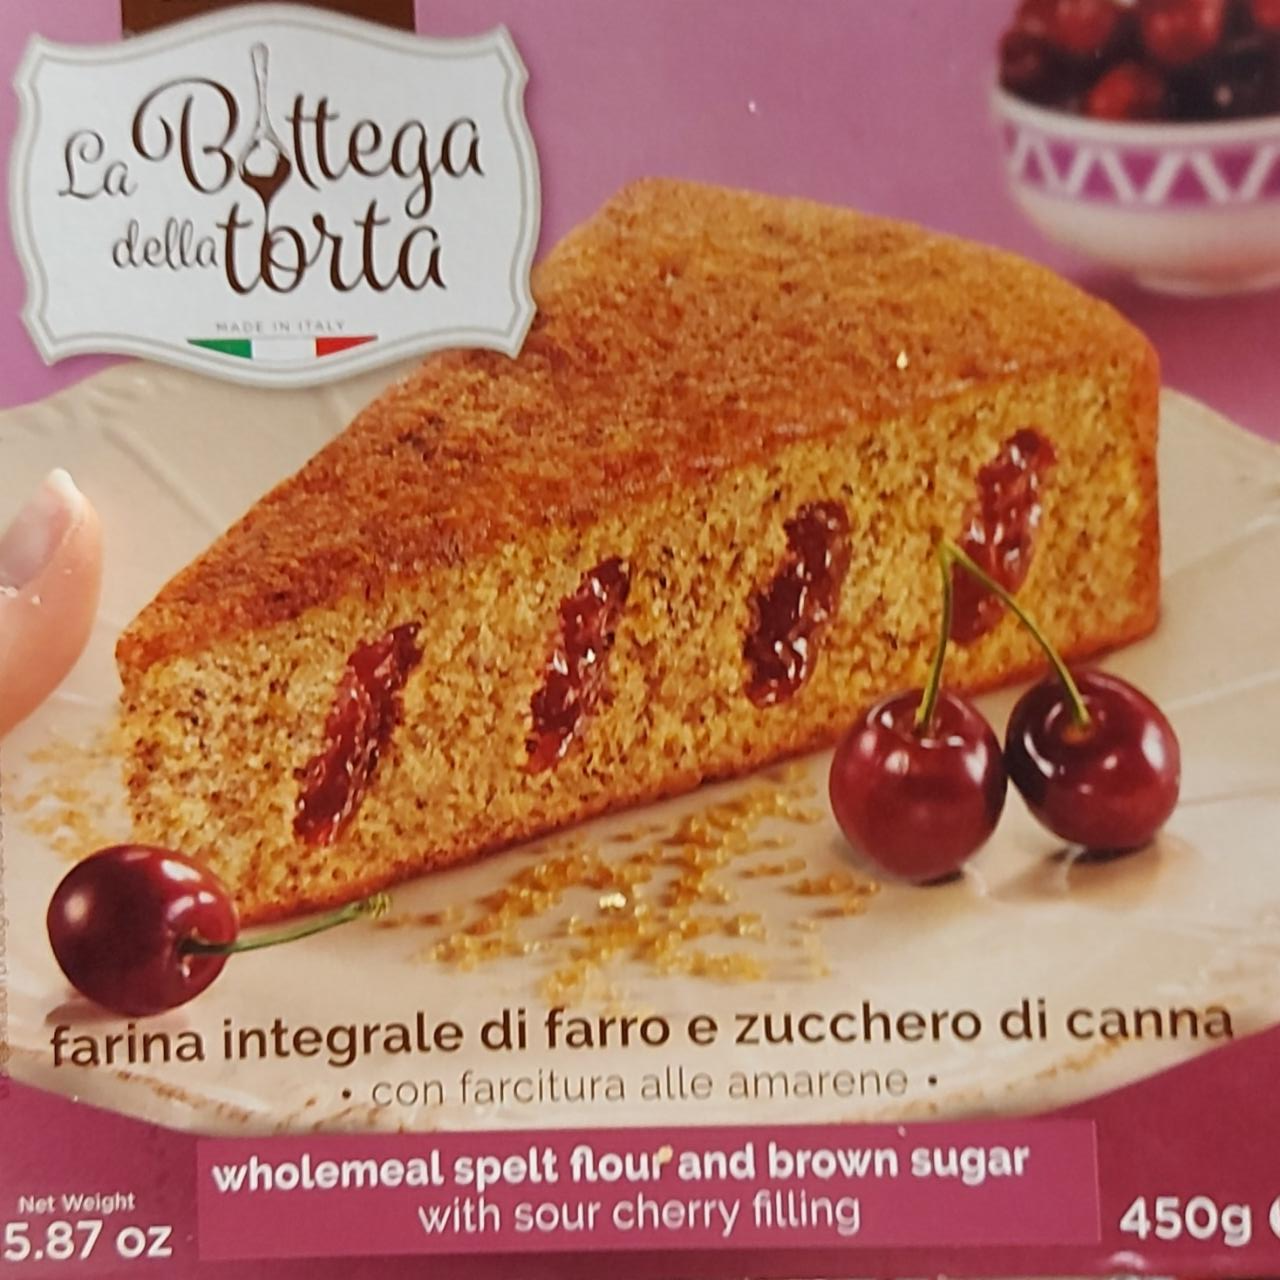 Fotografie - Farina integrale di farro e zucchero di canna La Bottega della torta